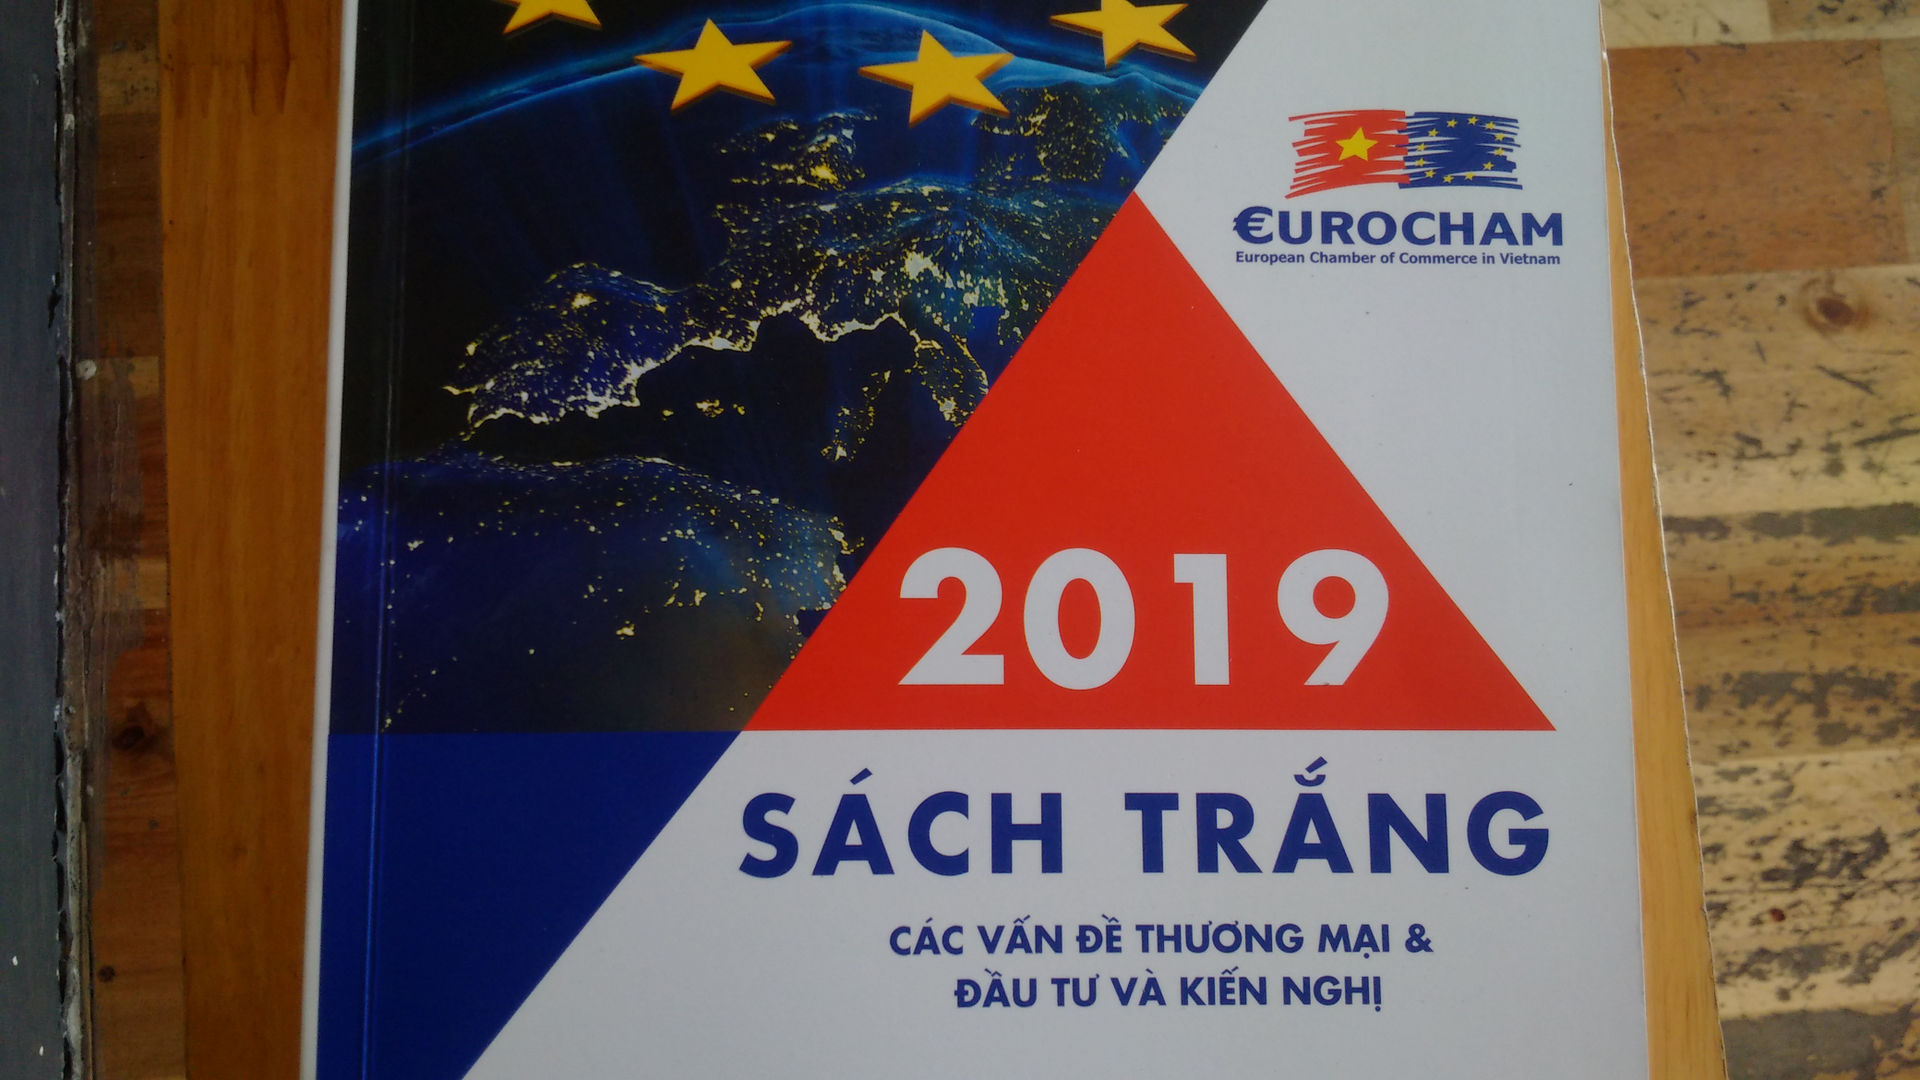 Sách trắng 2019  được cho là có nhiều kiến nghị, giải pháp về chính sách thương mại mà các doanh nghiệp châu Âu muốn góp ý với Việt Nam.